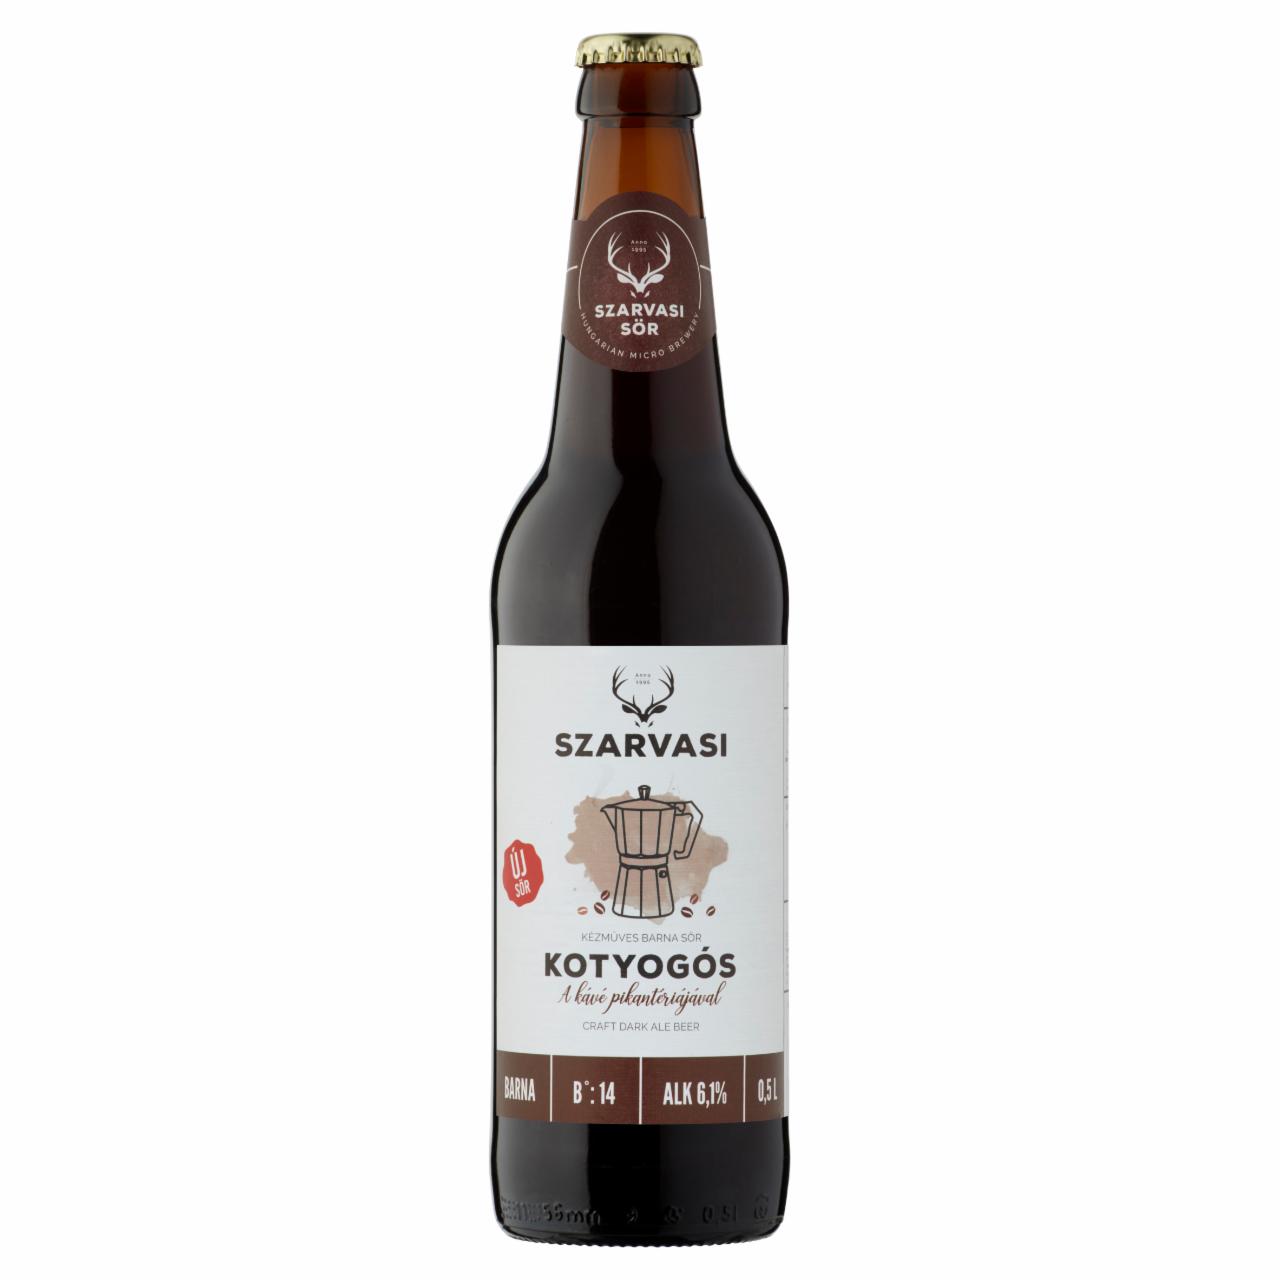 Képek - Szarvasi Kotyogós kézműves barna sör 6,1% 0,5 l